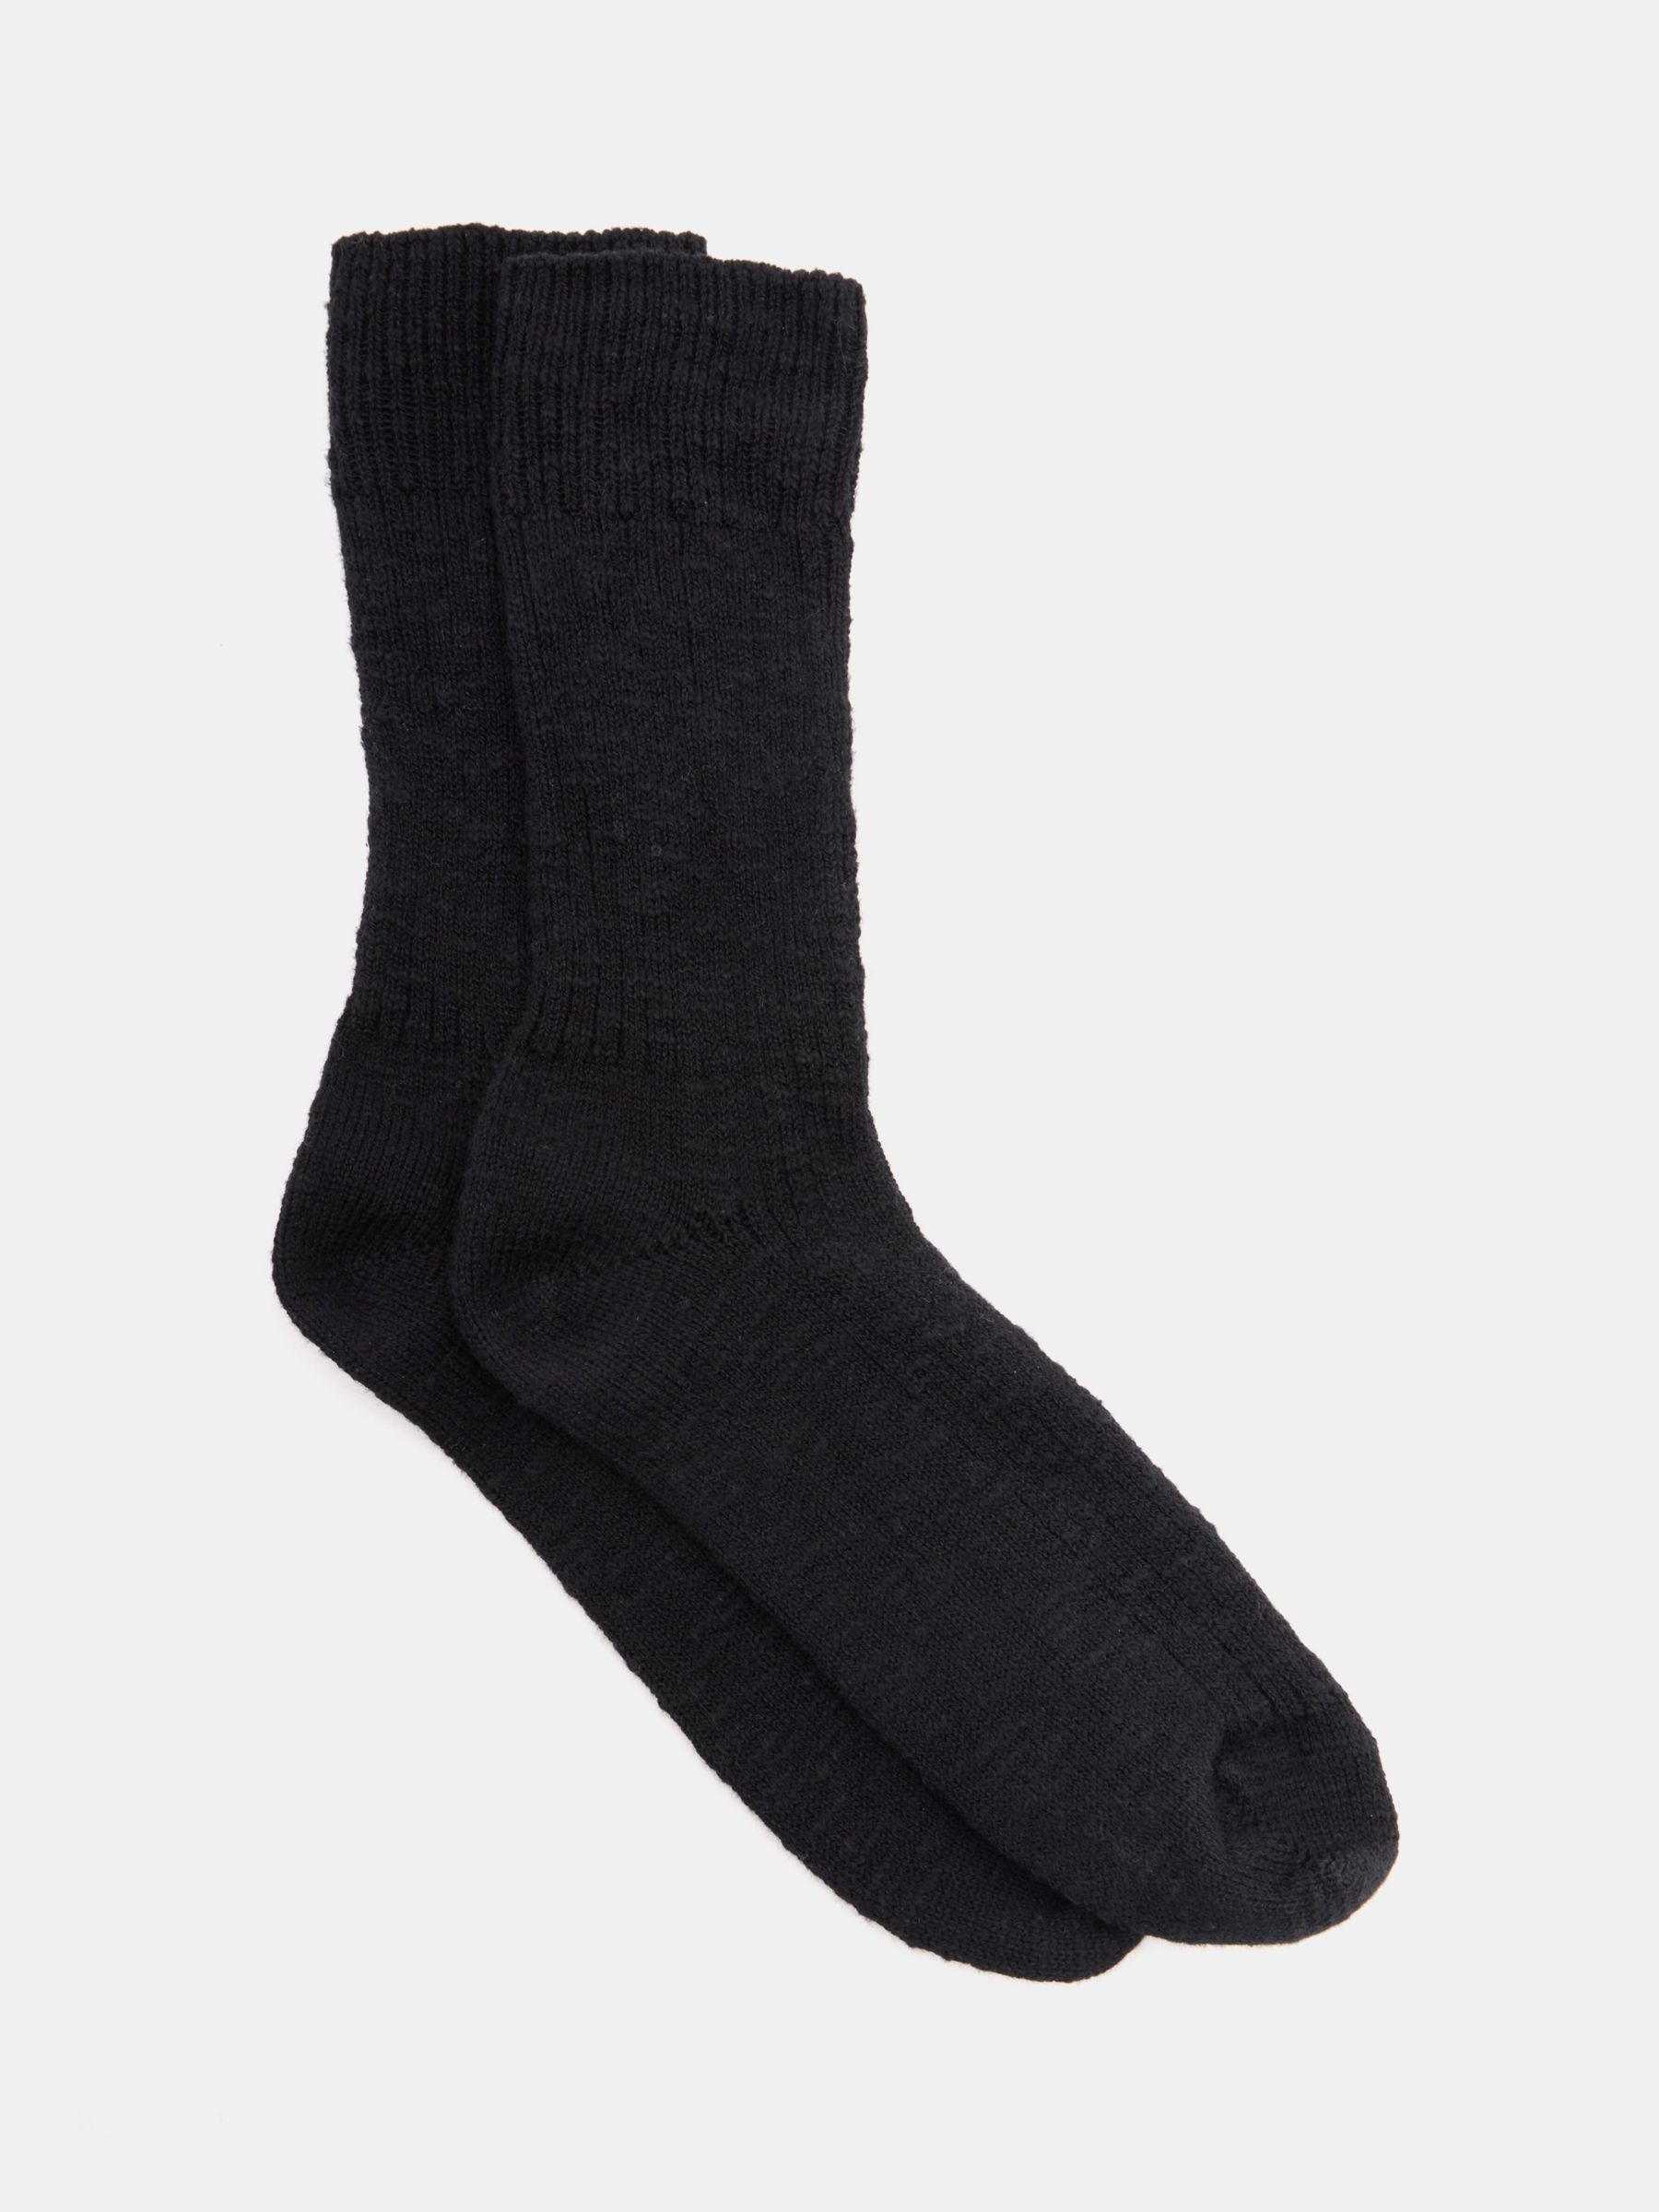 HUSH Cali Cotton Twist Socks, Black at John Lewis & Partners